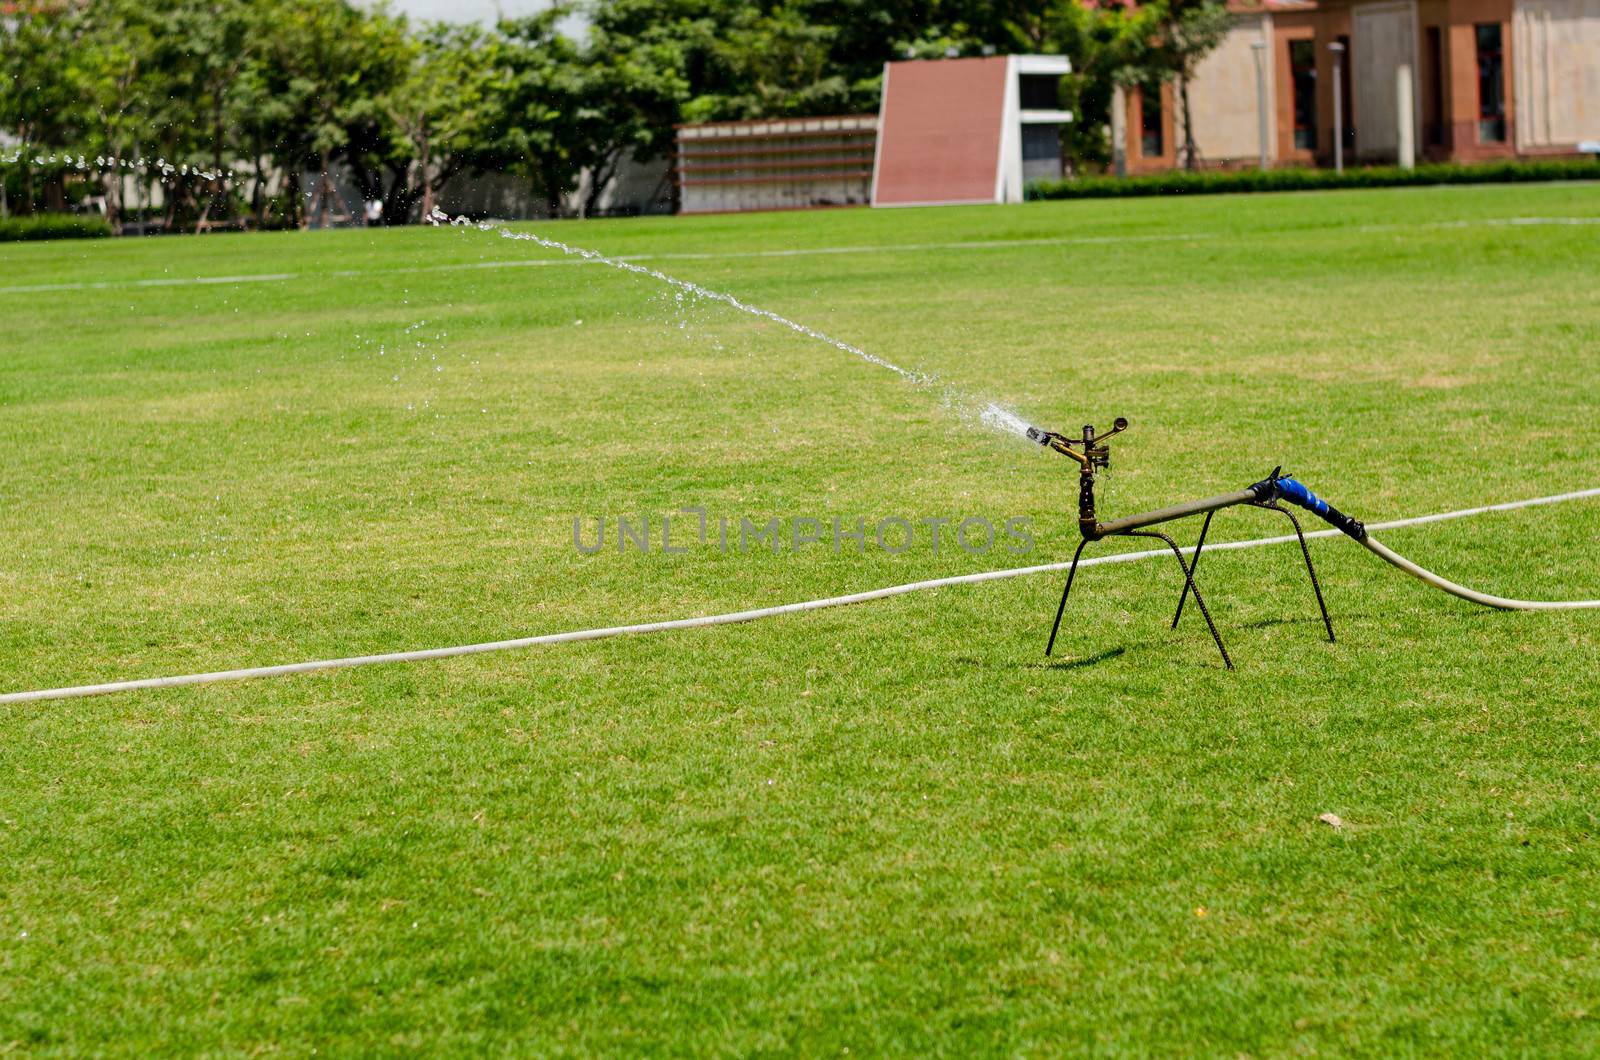 watering in football field by ammza12